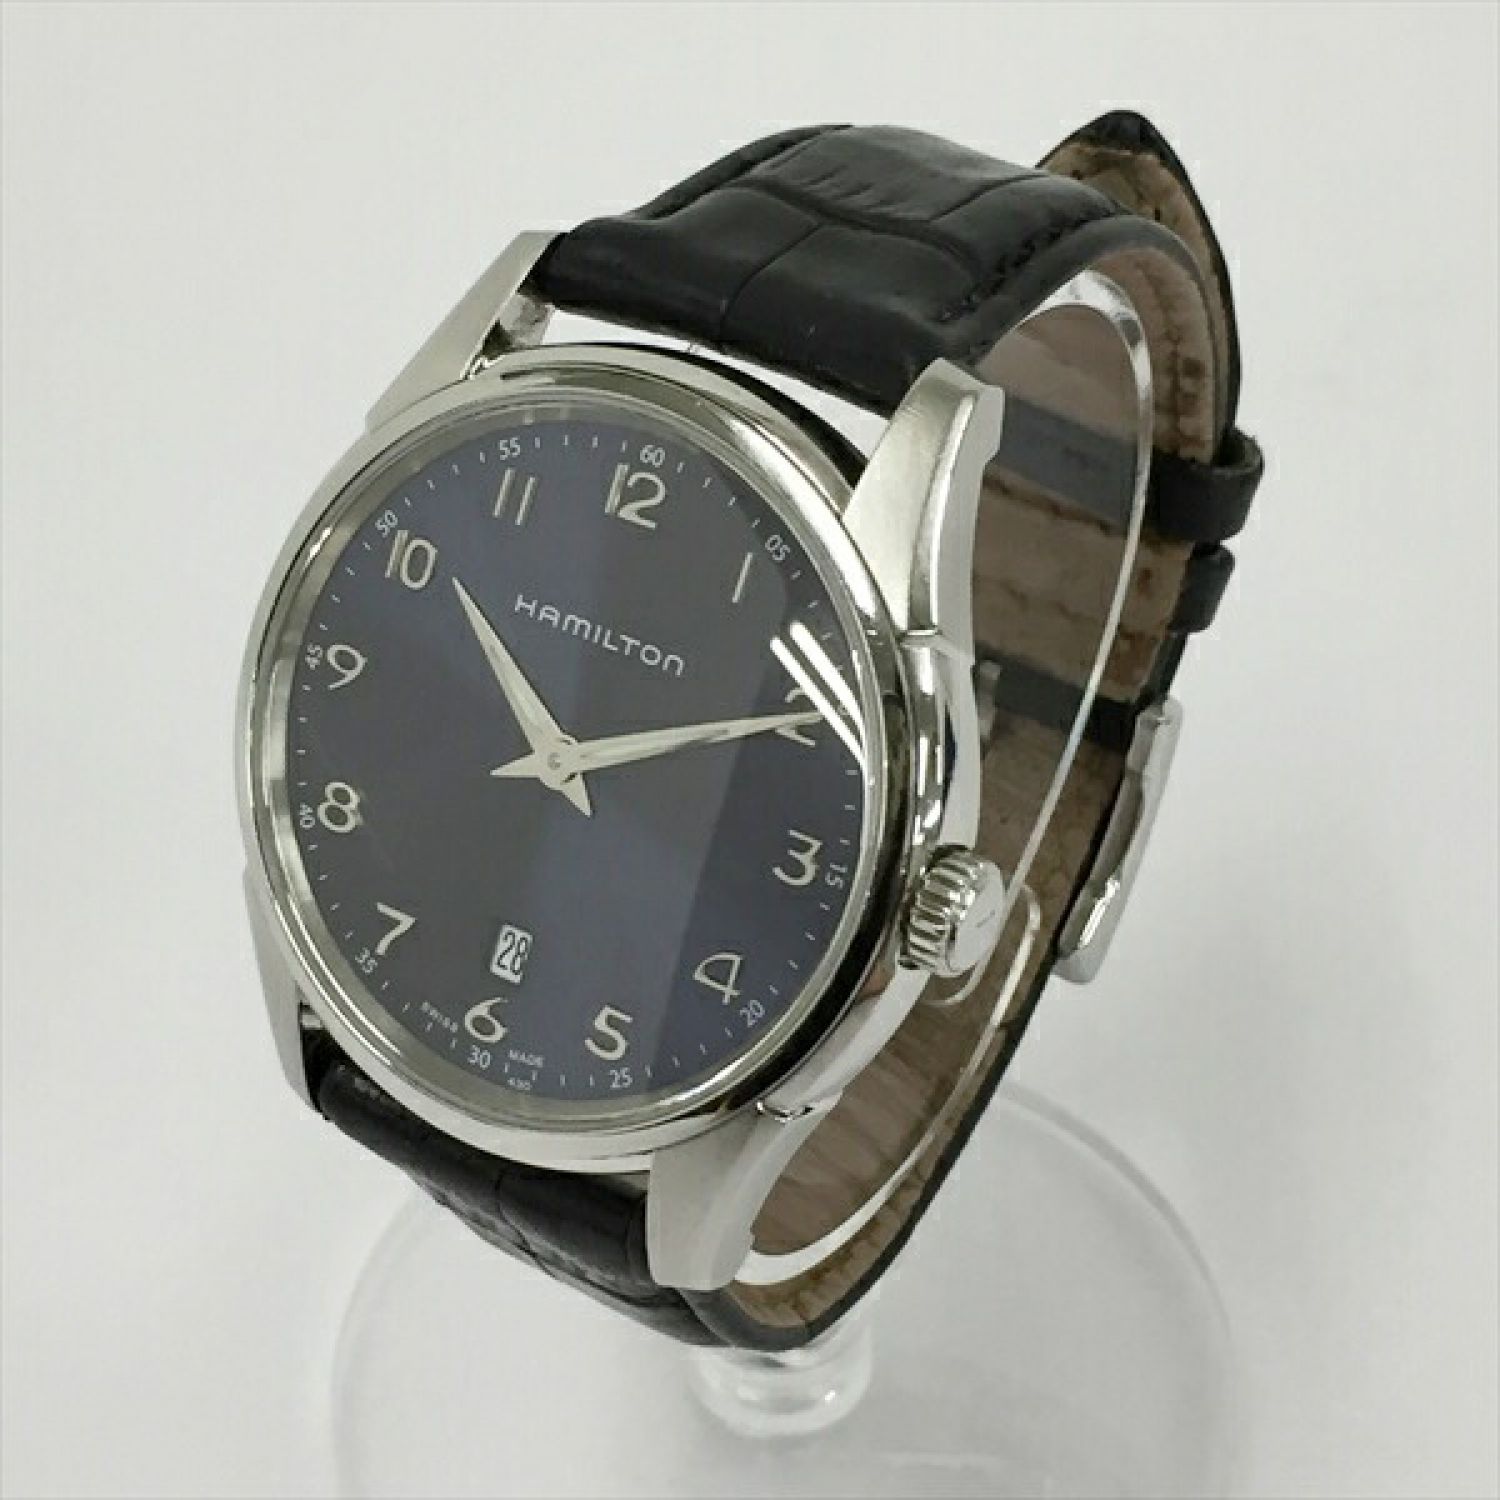 割引 Hamilton 腕時計 ジャズマスター デイト H385111 nmef.com